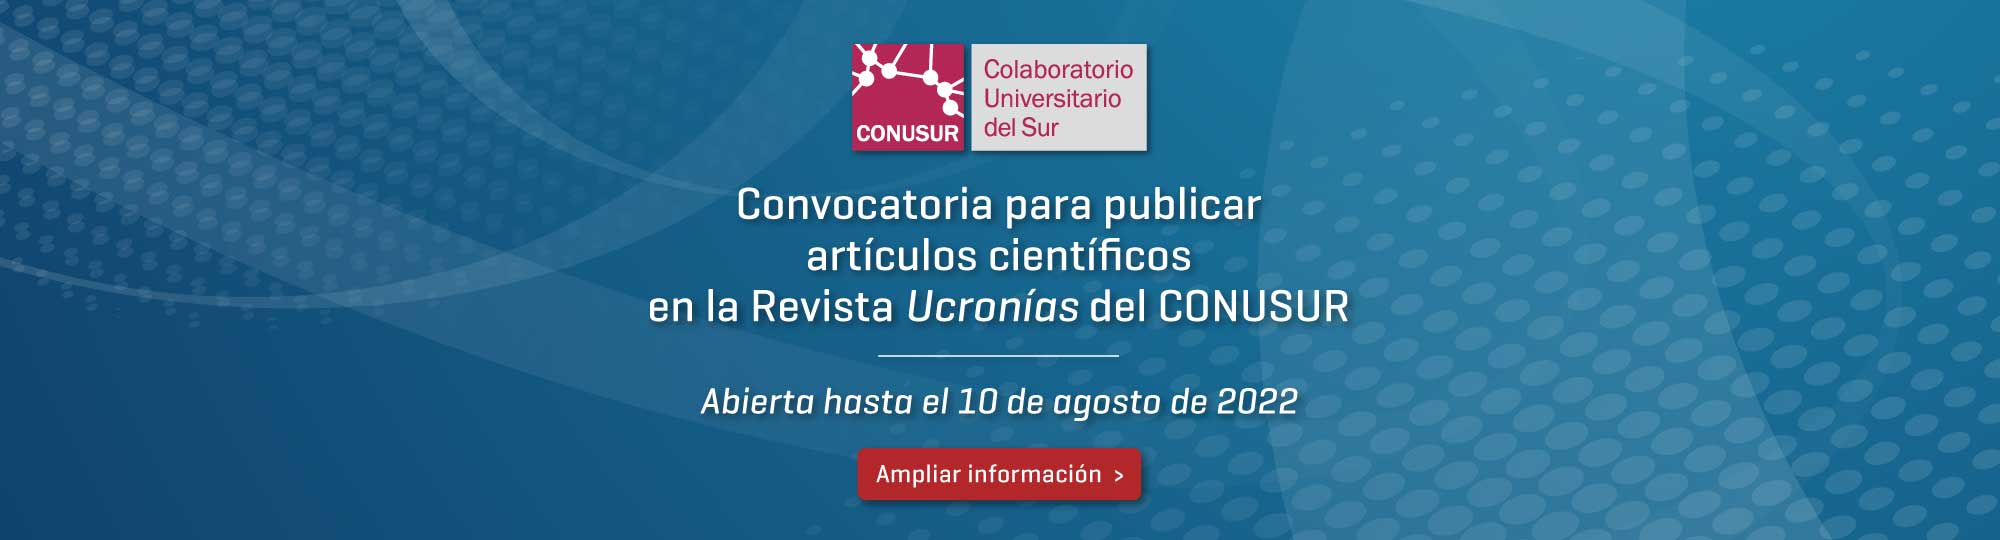 Convocatoria para publicar artículos científicos en la Revista Ucronías del CONUSUR - Abierta hasta el 10 de agosto de 2022